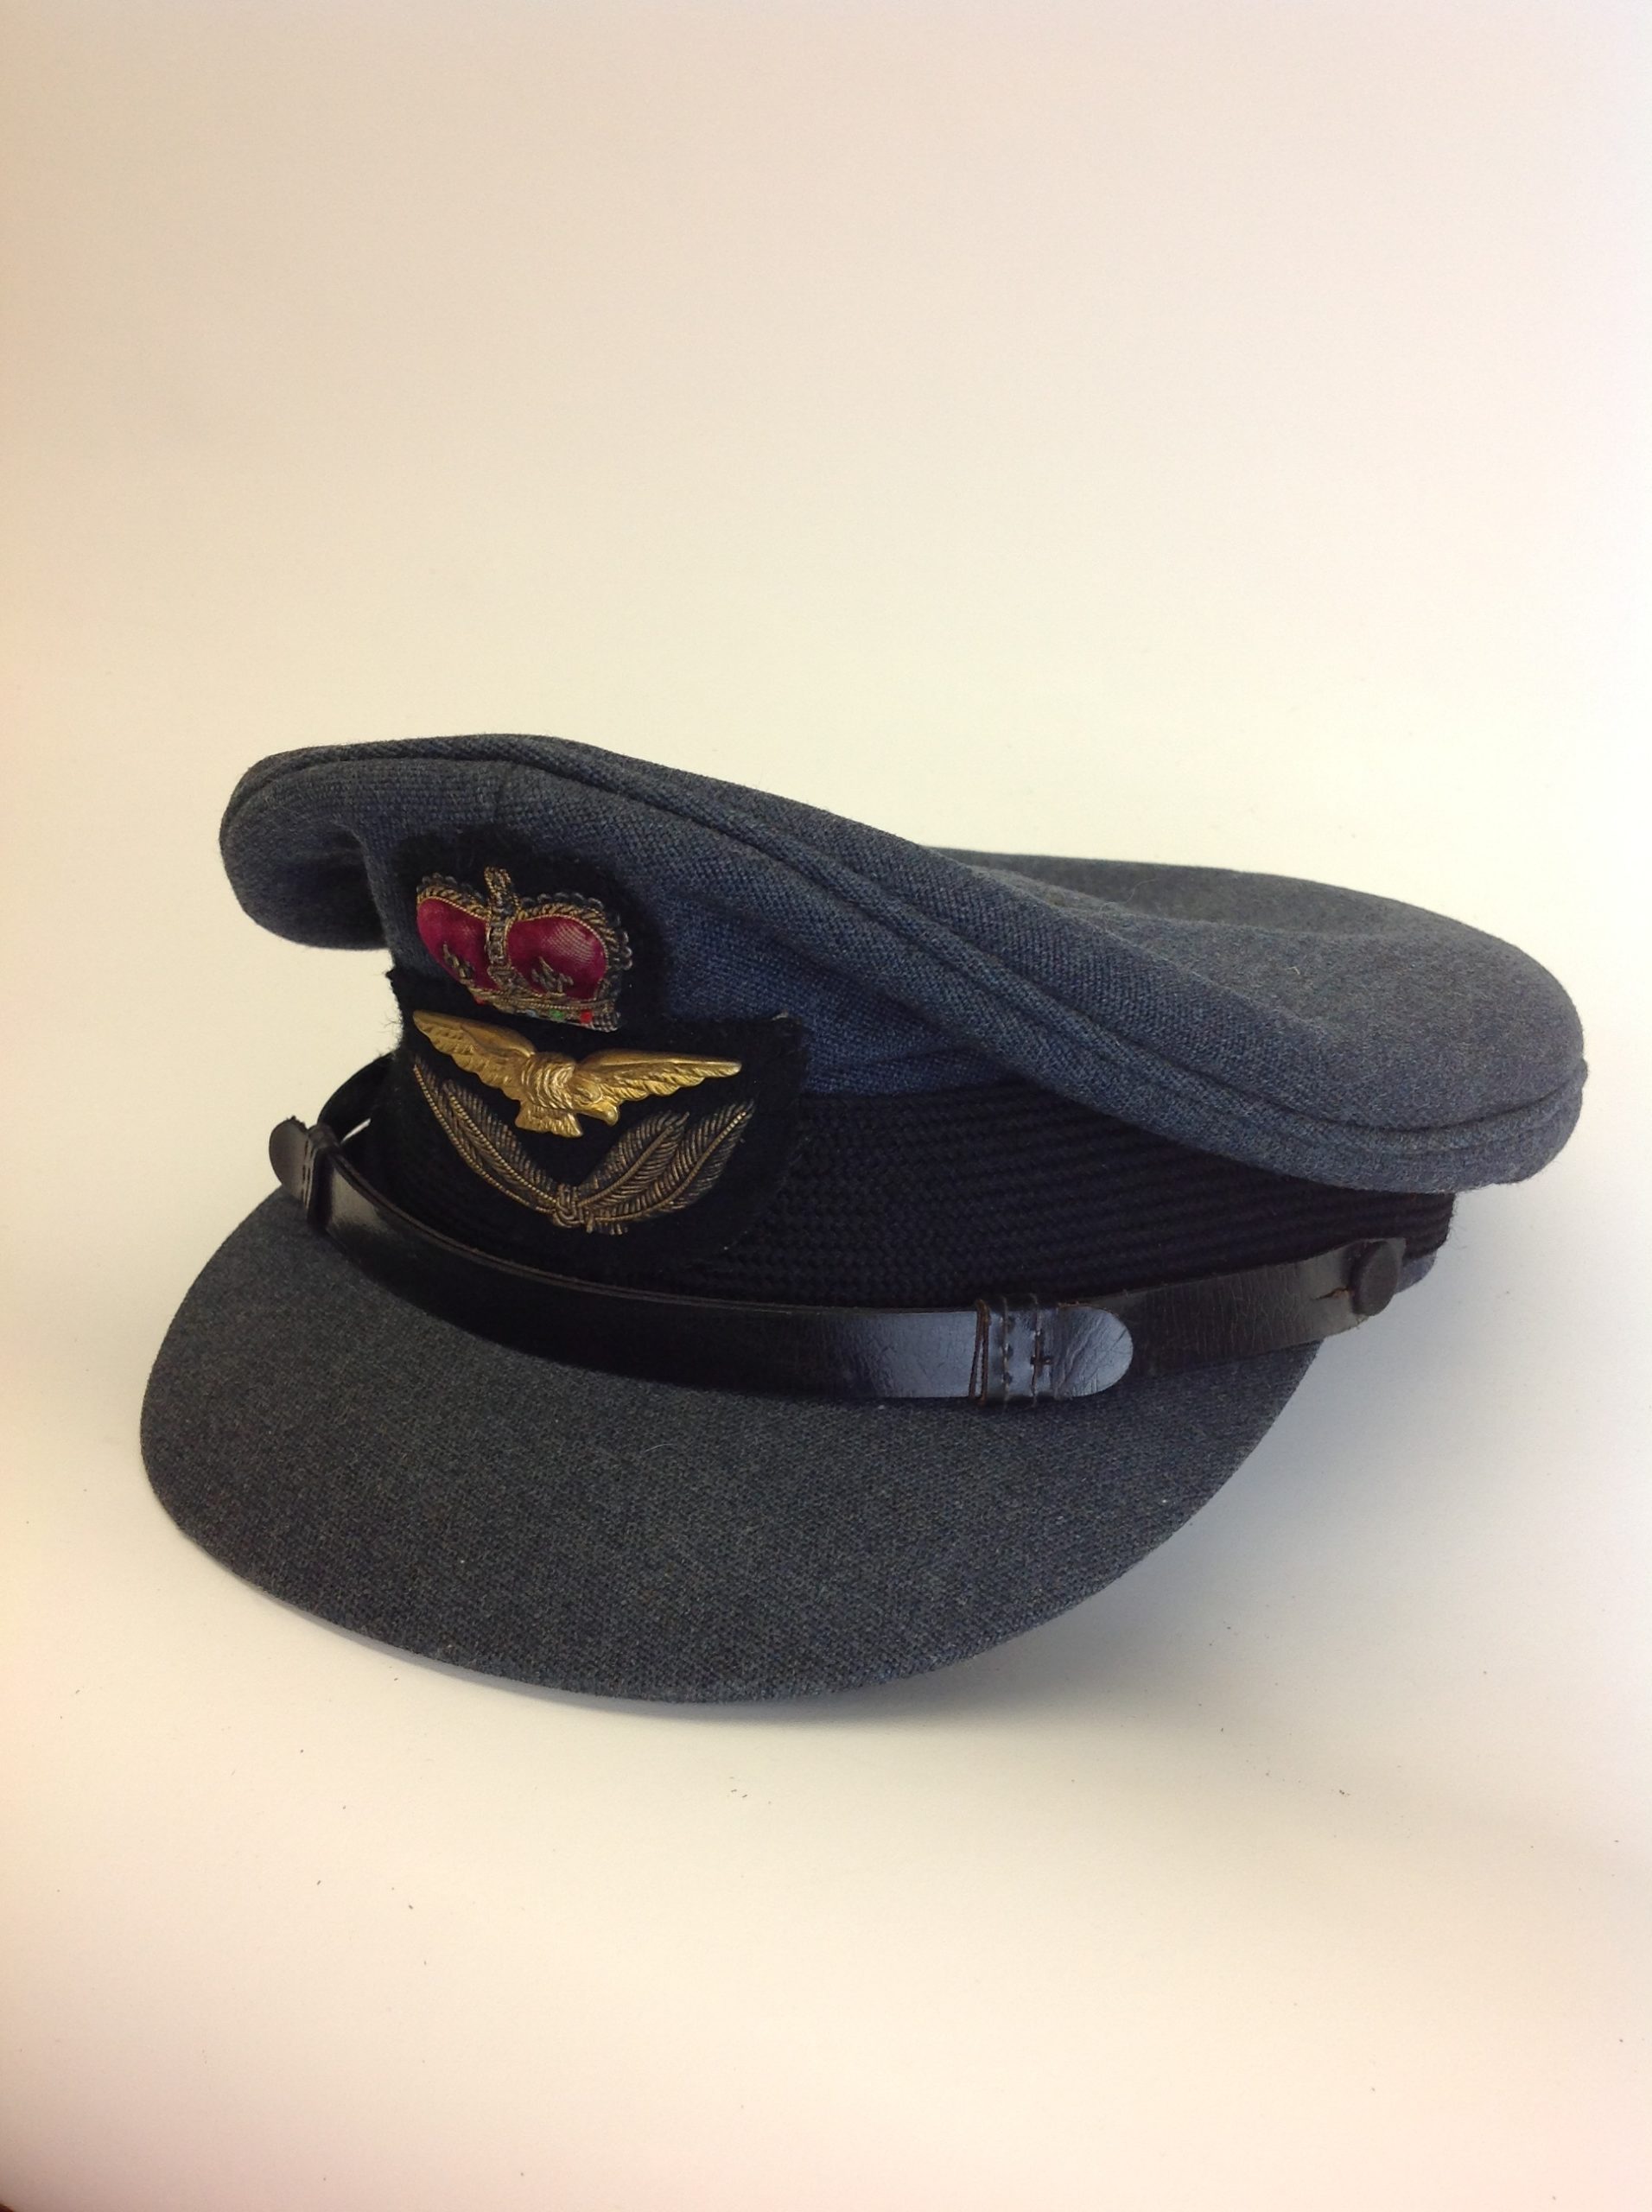 RAF Officer's Peaked Cap - On The Square Emporium